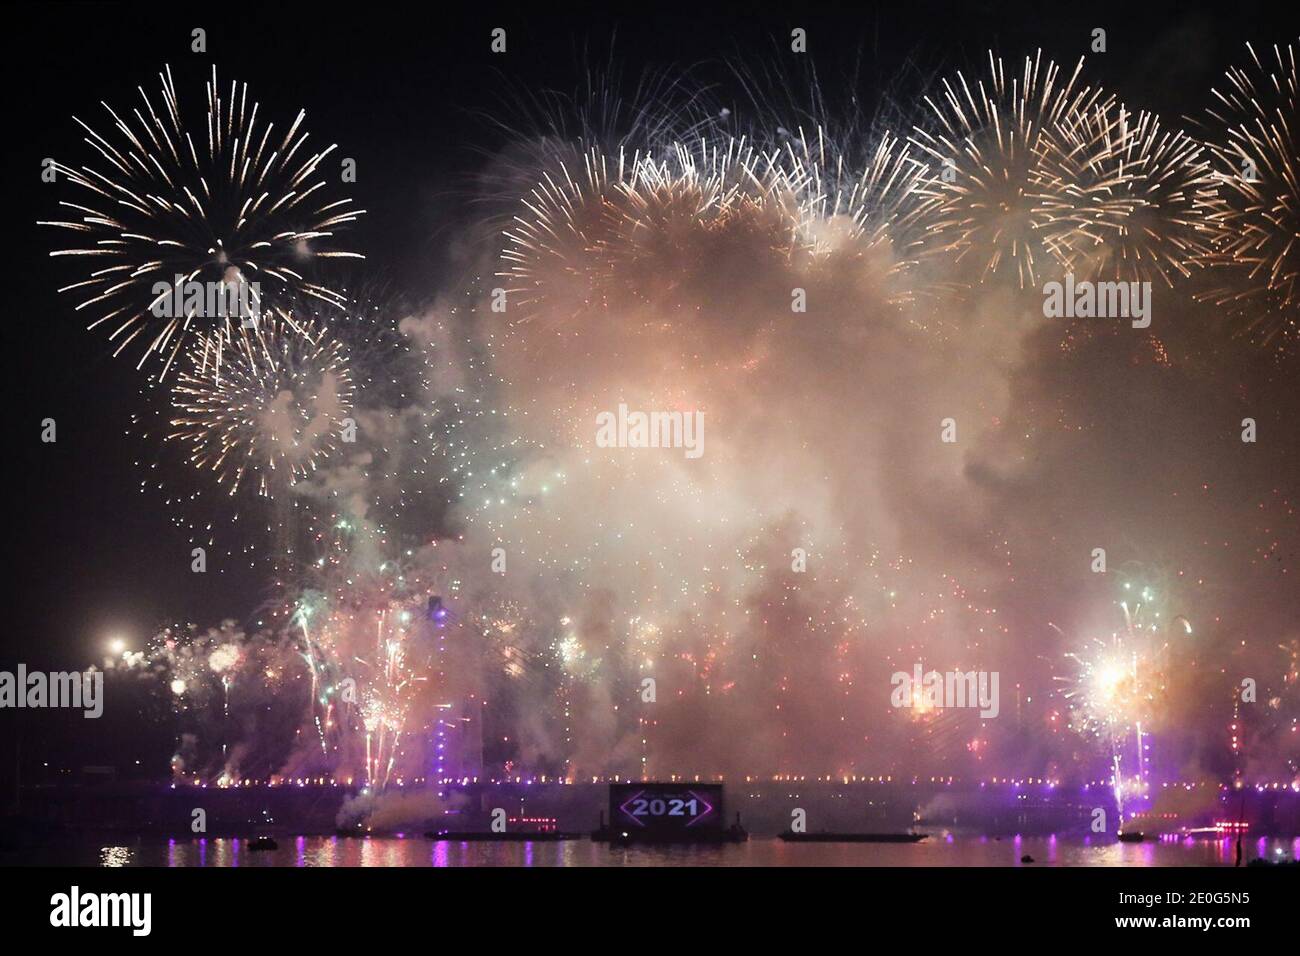 Kairo, Ägypten. Dezember 2020. Feuerwerk erleuchtet den Himmel über der Rod El-Farag Achse - Tahya Masr Brücke während der Silvesterfeier. Kredit: Fadel Dawood/dpa/Alamy Live Nachrichten Stockfoto